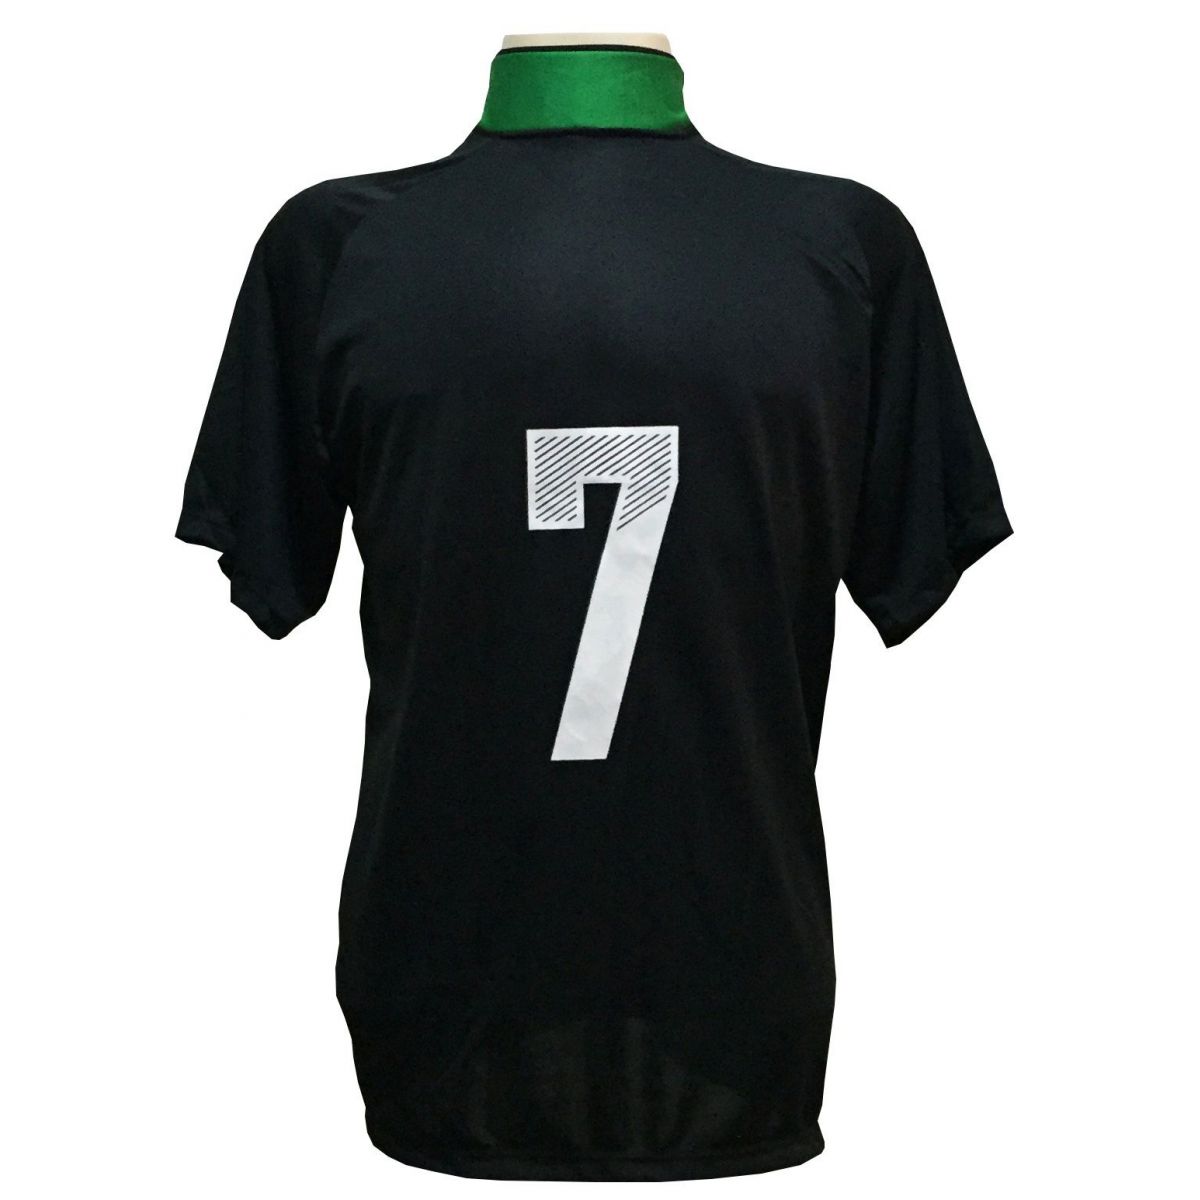 Uniforme Esportivo com 18 camisas modelo Milan Preto/Verde + 18 calções modelo Madrid Preto + 1 Goleiro